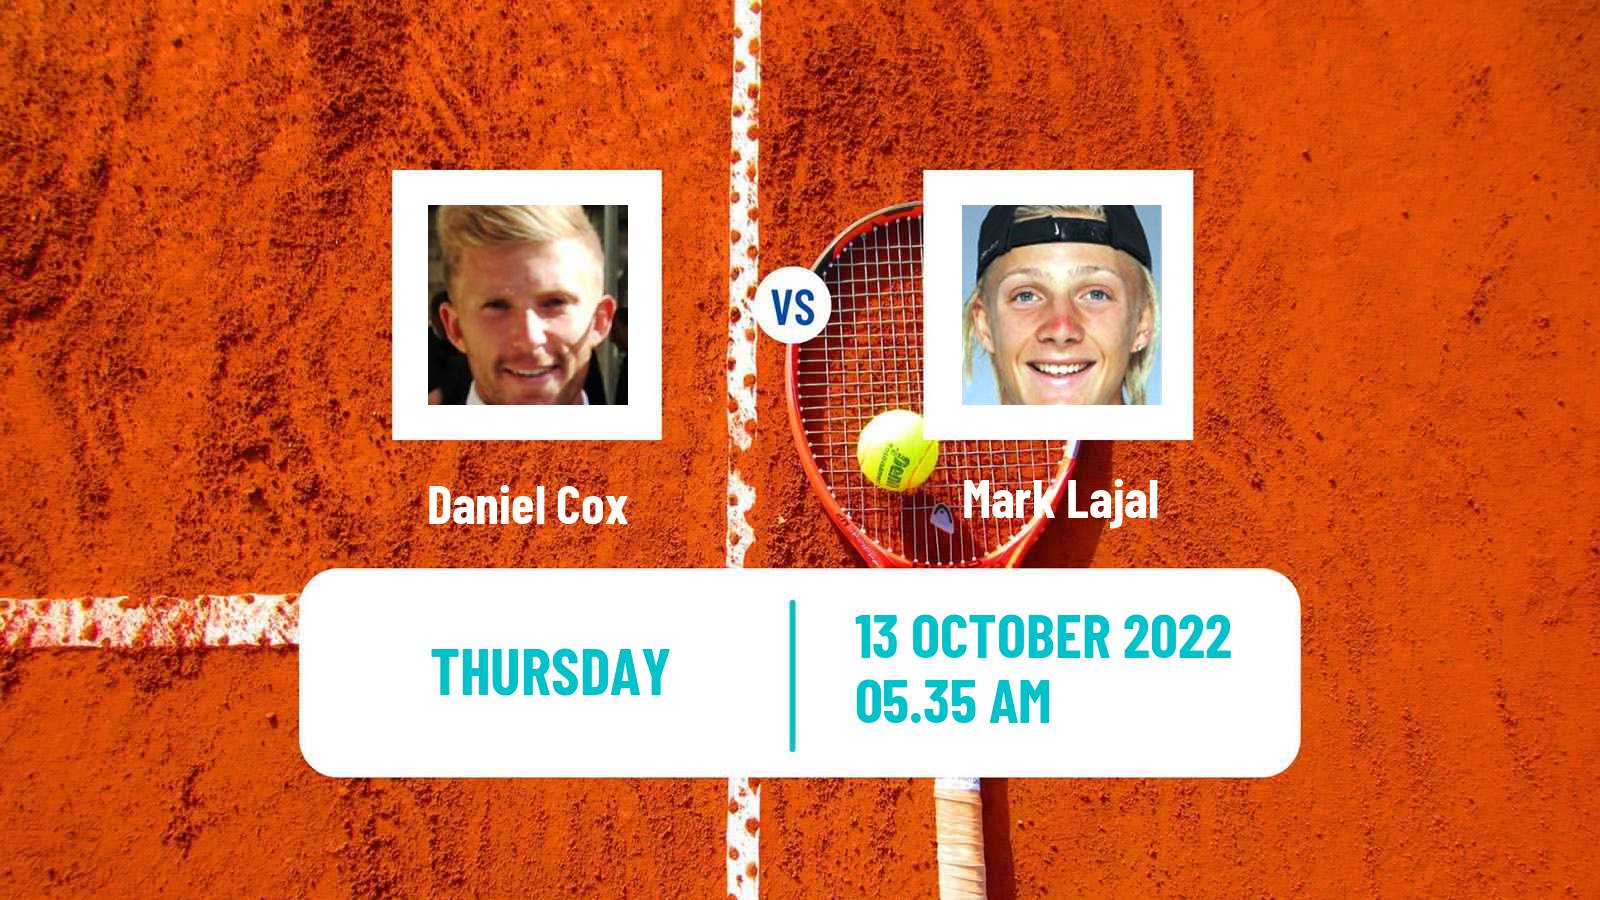 Tennis ITF Tournaments Daniel Cox - Mark Lajal